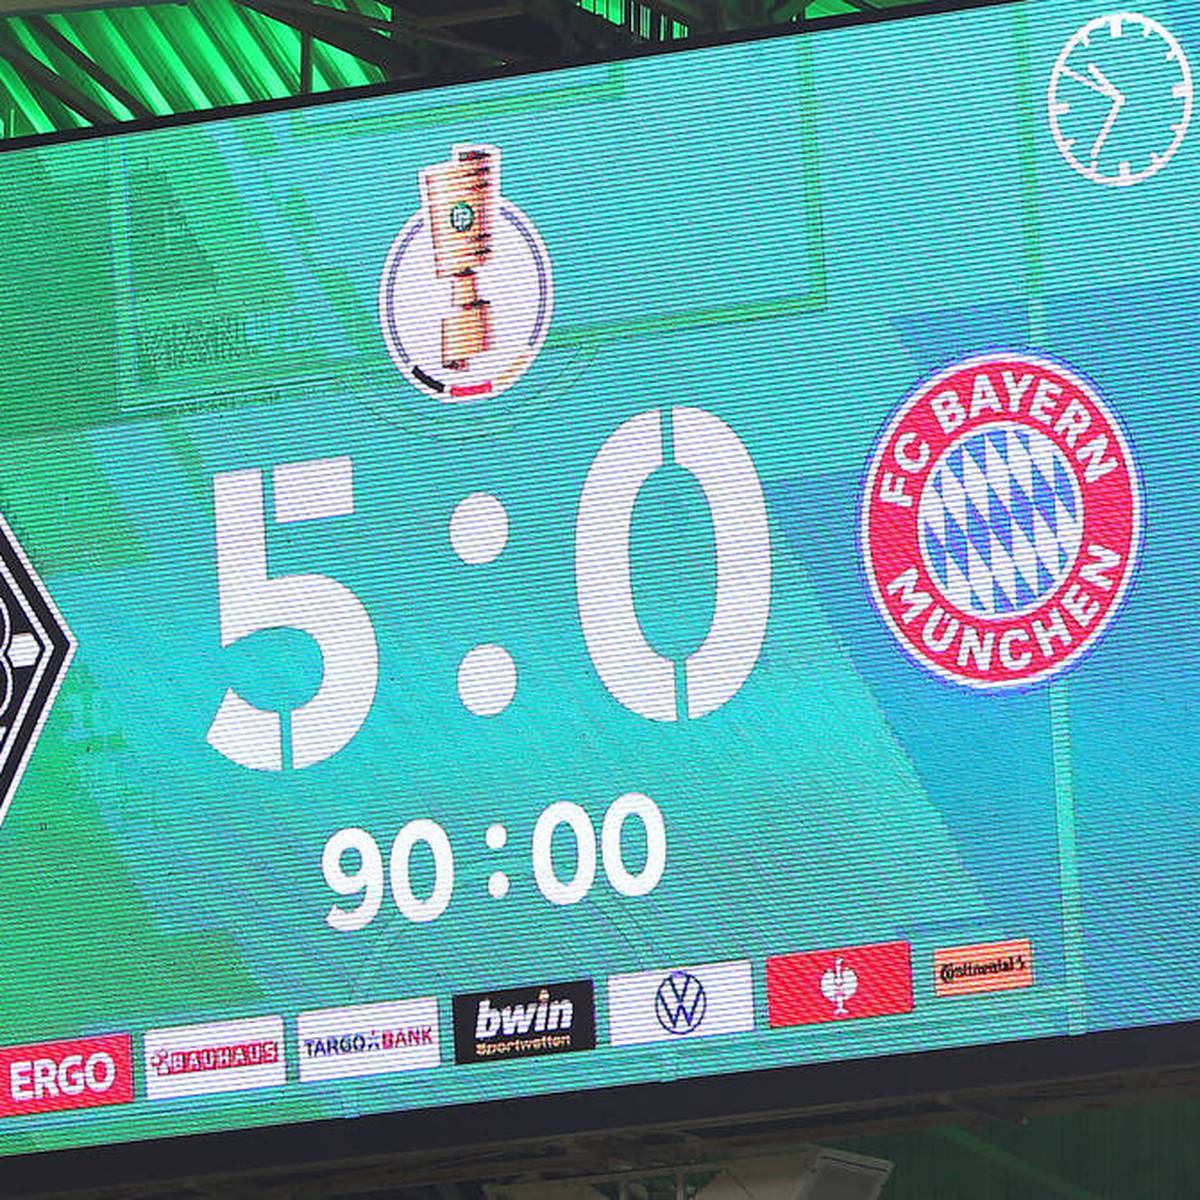 Die Fußballfans freuen sich in einer Umfrage über das Pokal-Aus des FC Bayern. Sie wollen, dass 1860 oder der KSC den Titel holen - glauben aber an den BVB.